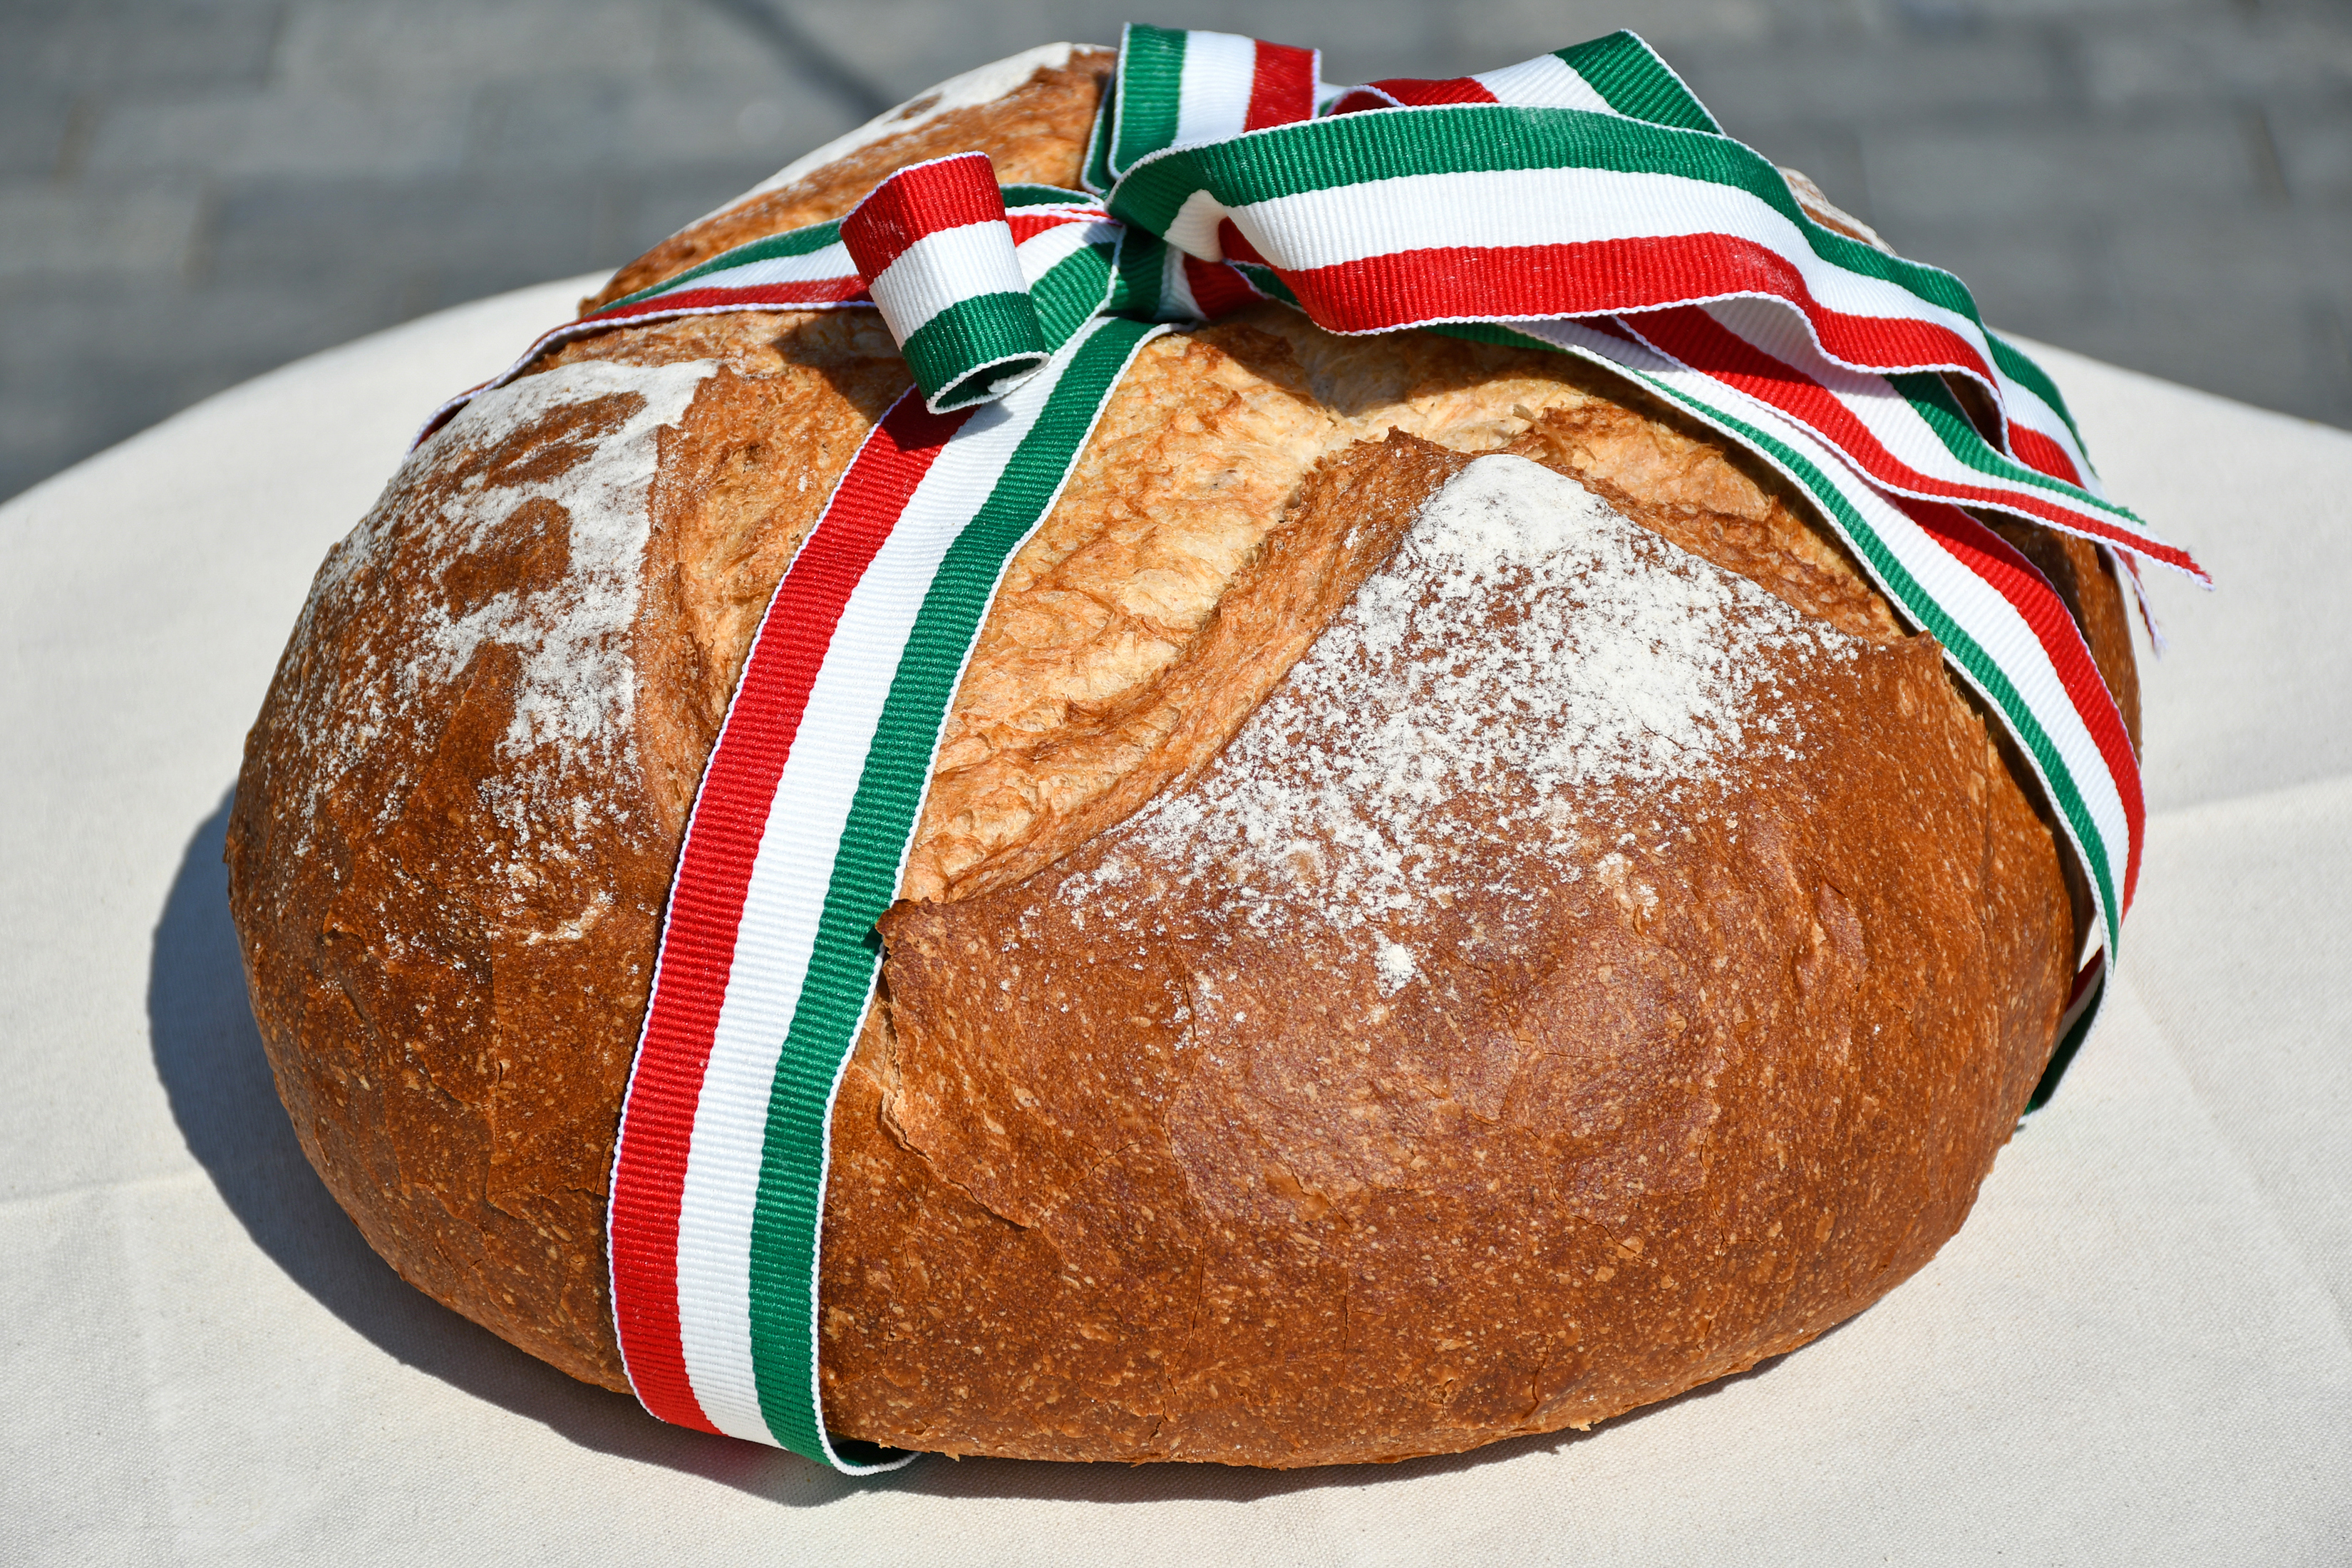 Miért beszélünk új kenyér ünnepéről augusztus 20-án? - kiskegyed.hu